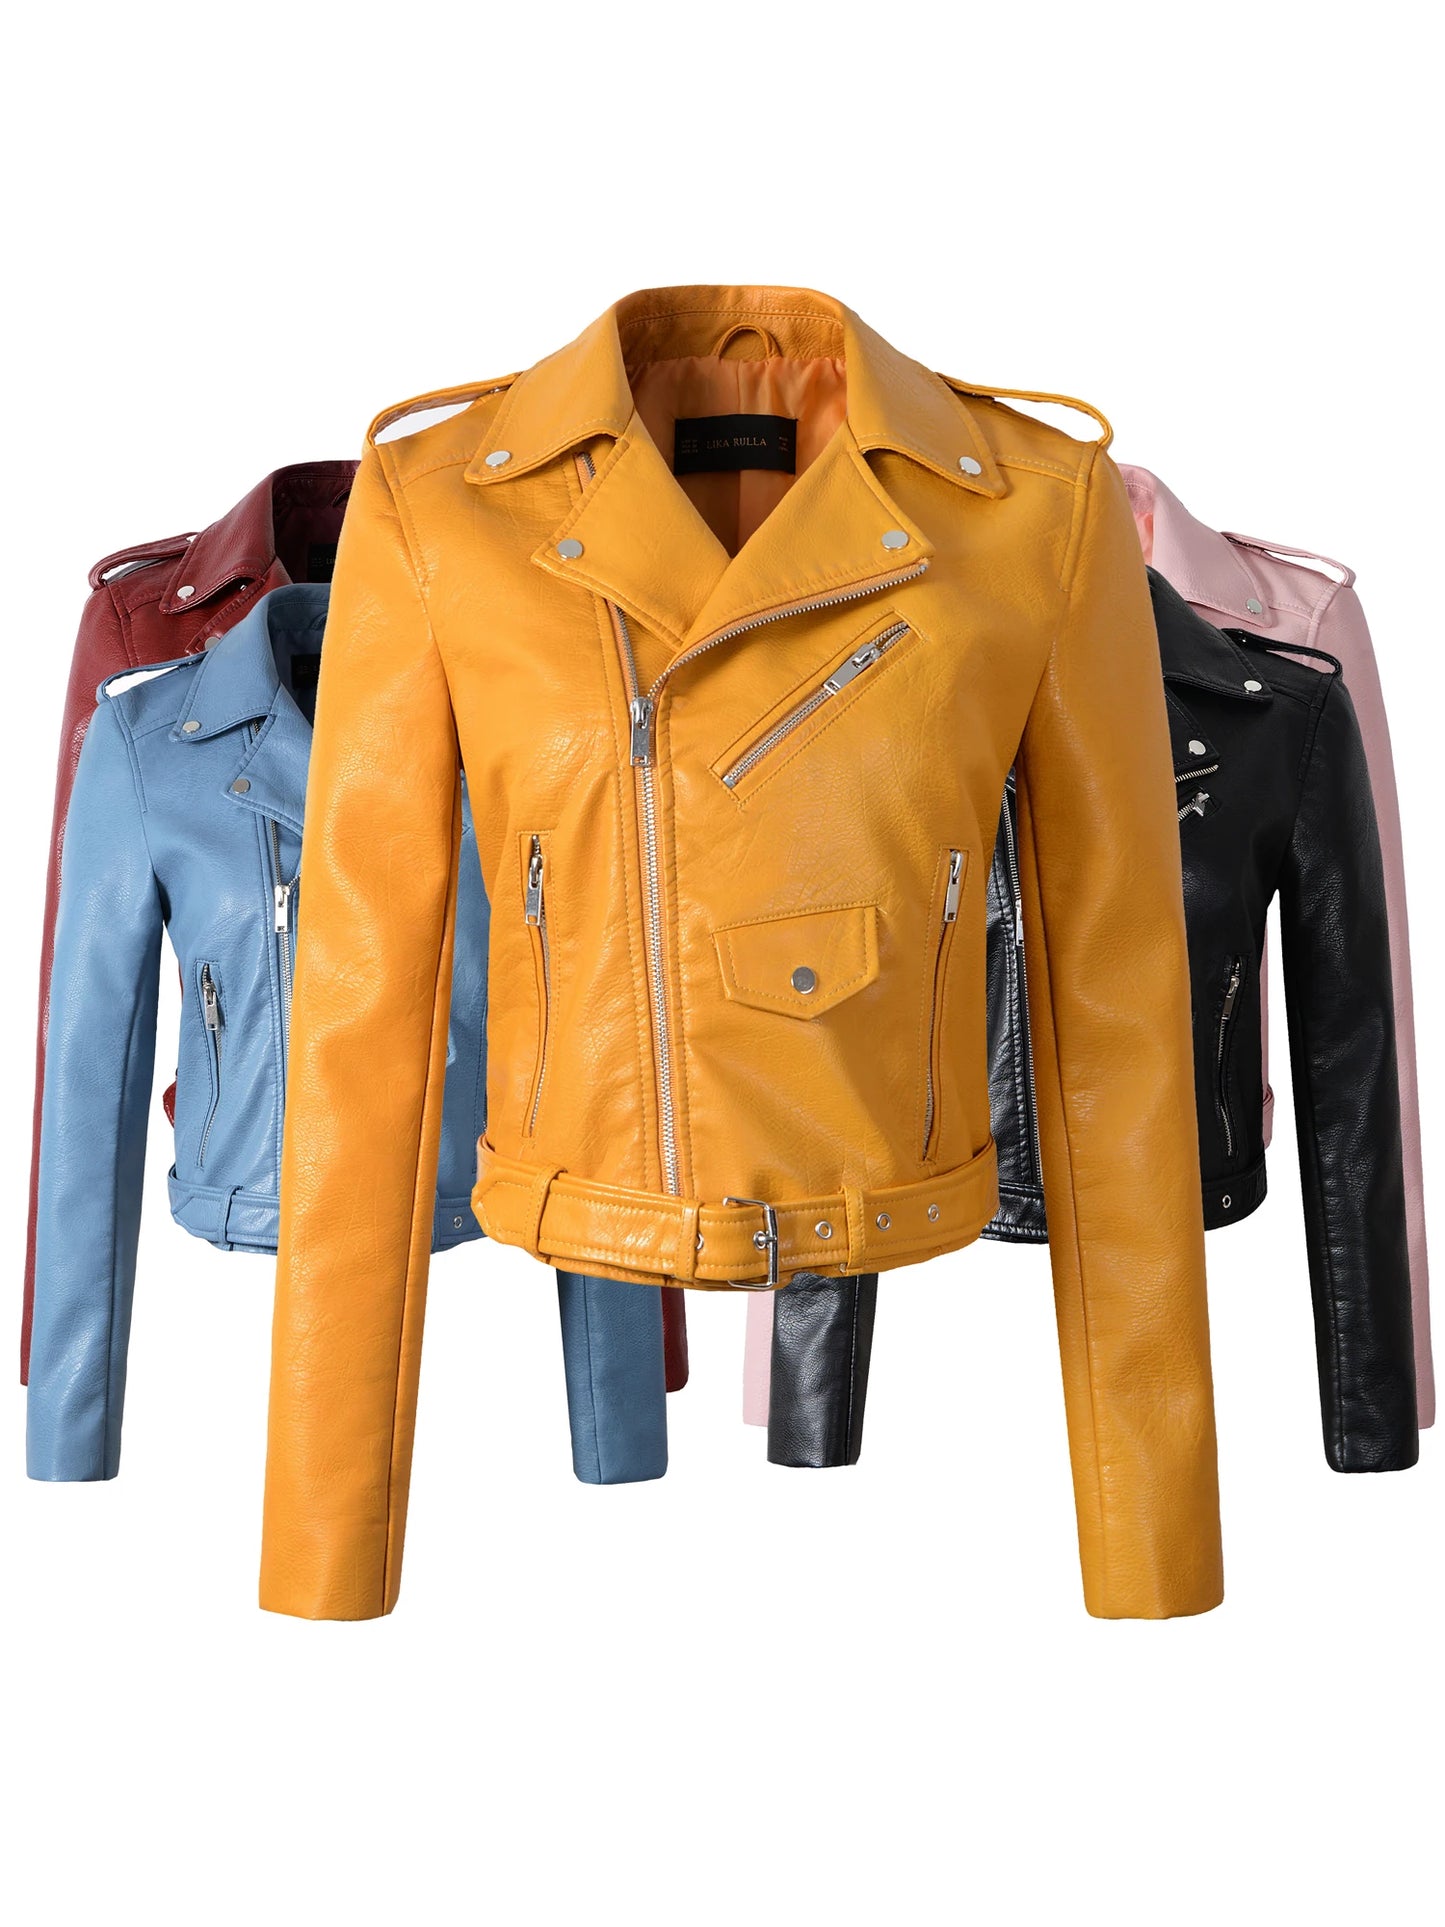 Motorcycle leather jackets - Slim PU jacket Leather